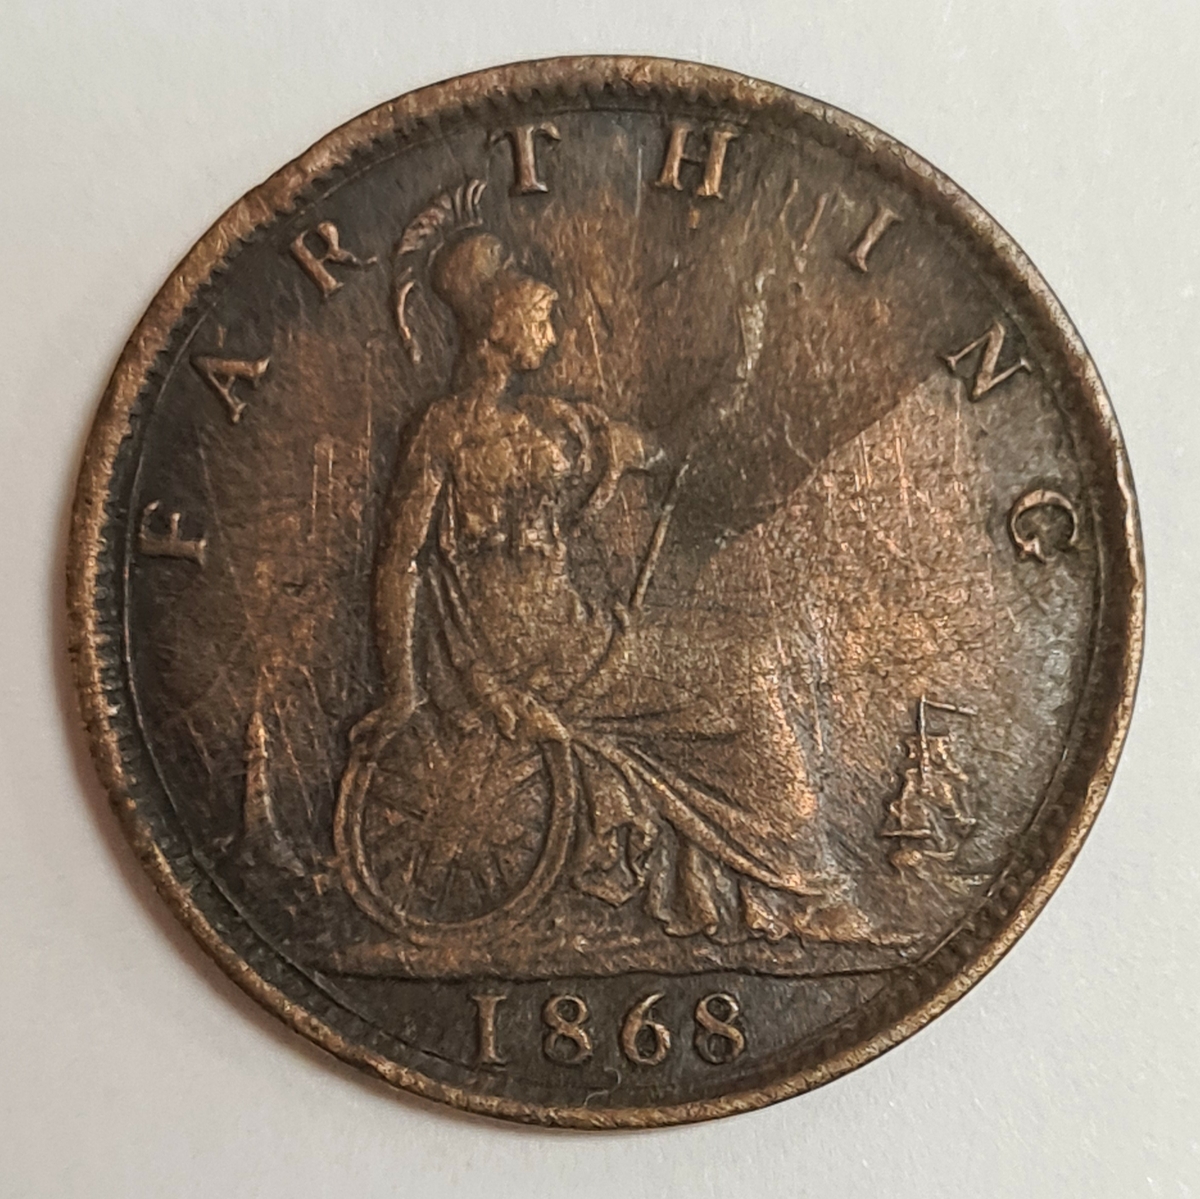 Ett mynt från Storbritanien/England.
Farthing 1868